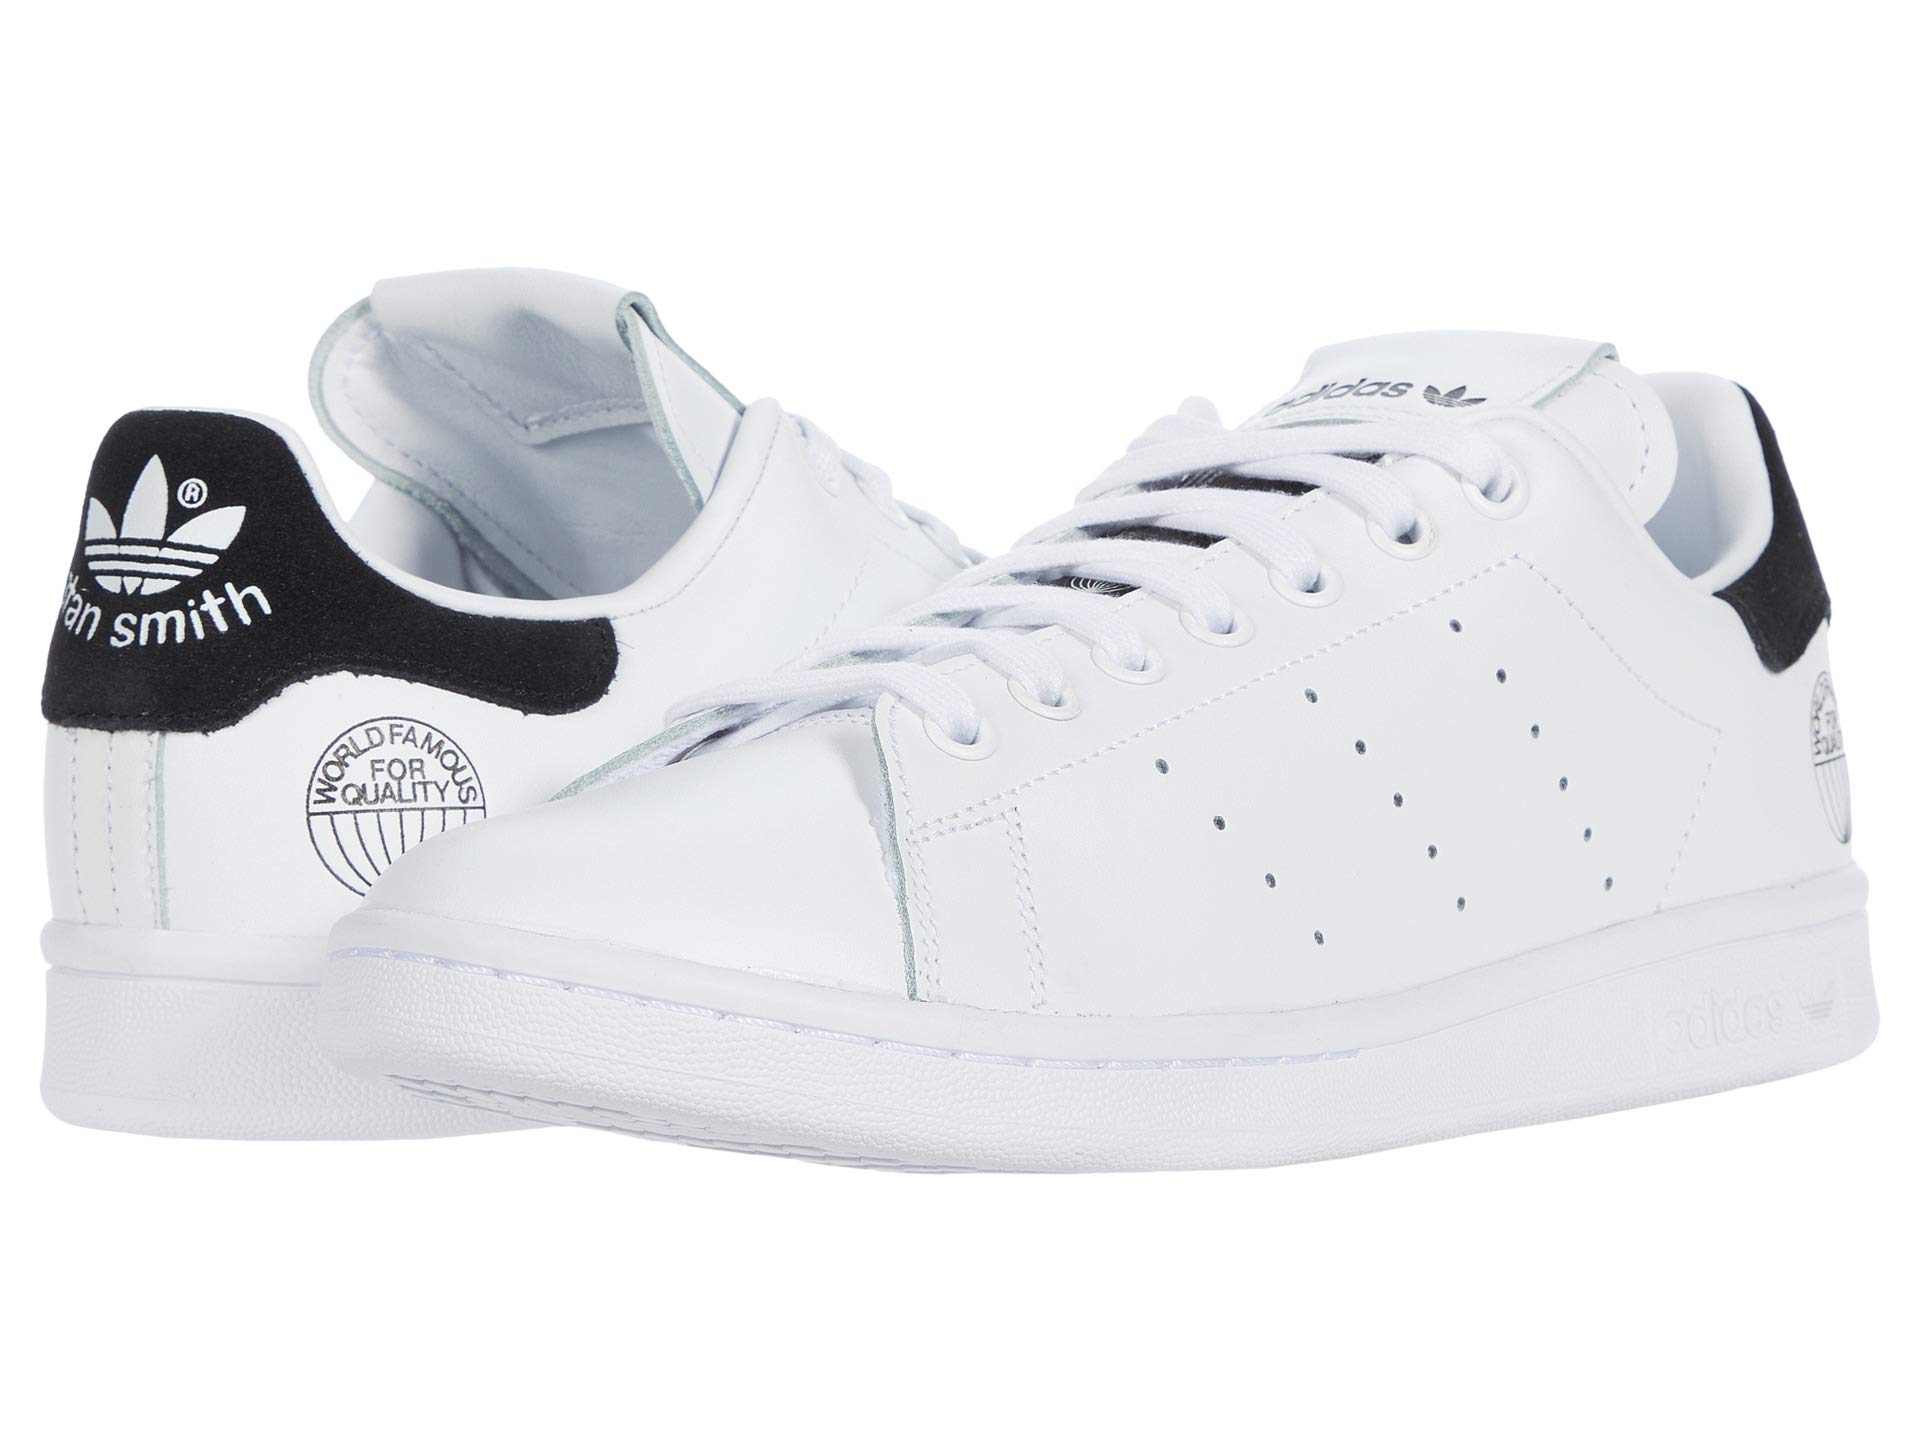 Мужские кроссовки Adidas Originals Stan Smith, белый/черный кроссовки adidas solar drive цвет footwear white footwear white core black